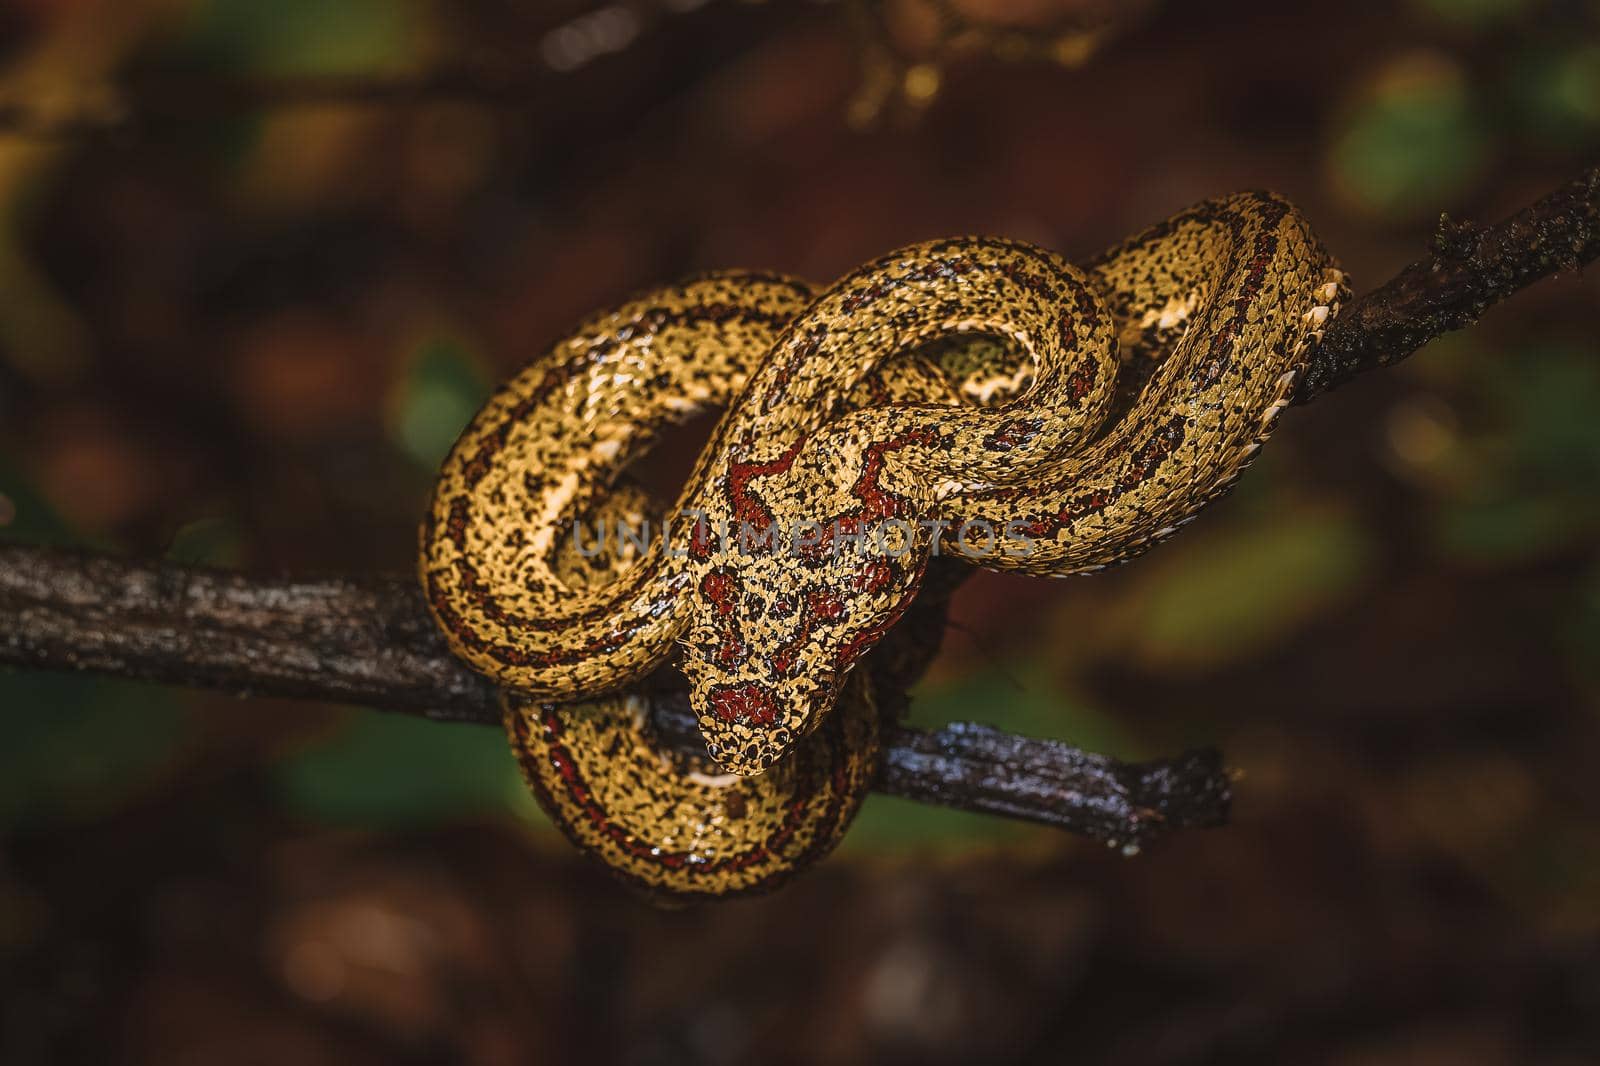 Wild Snake by Anna_Omelchenko